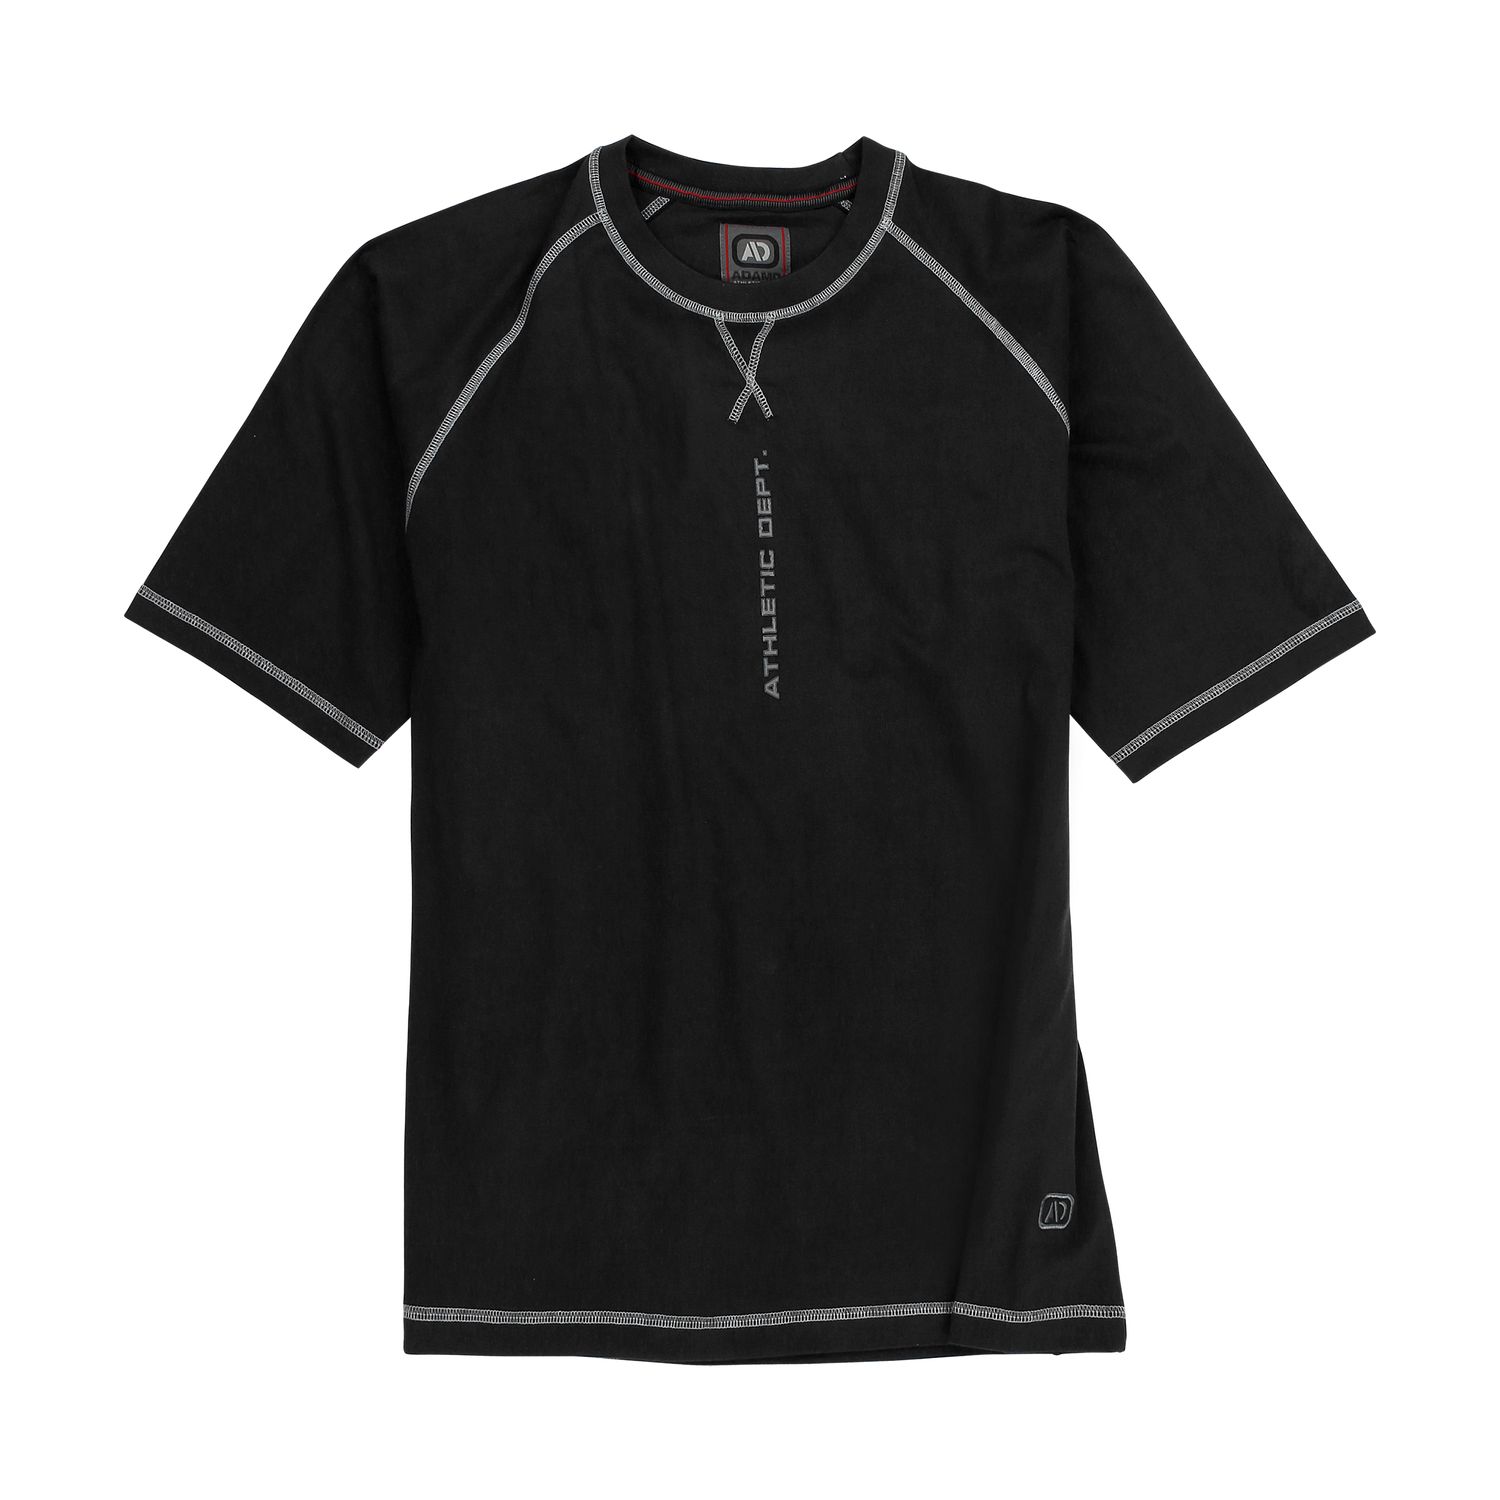 T-shirt noir CONFORT FIT by ADAMO en grandes tailles jusqu'au 14XL - Série "Marvin"